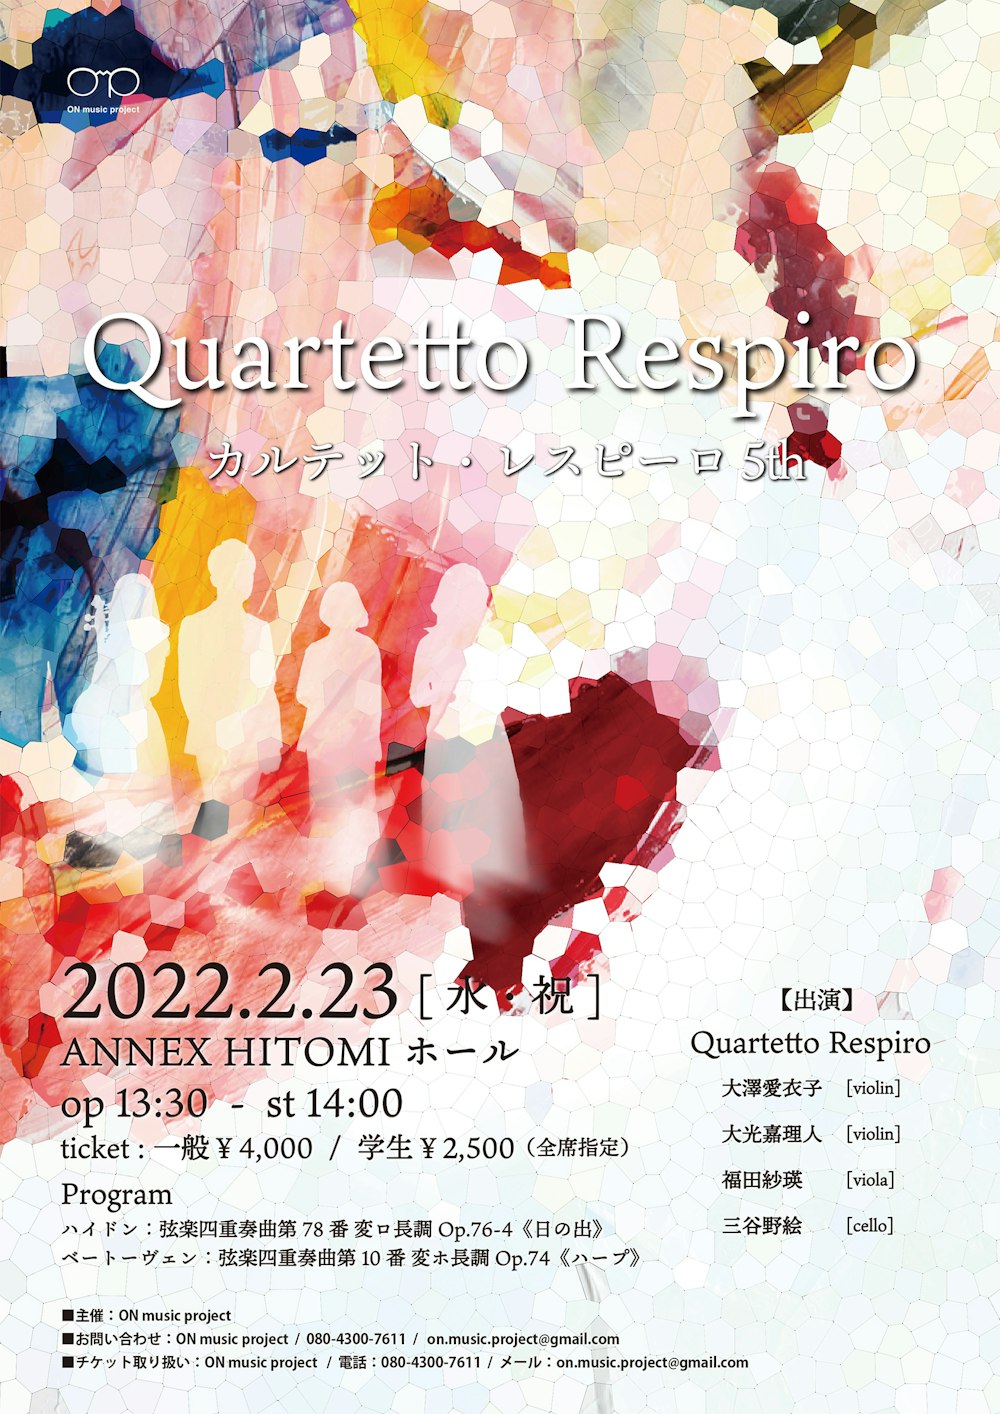 Quartetto Respiro 5th